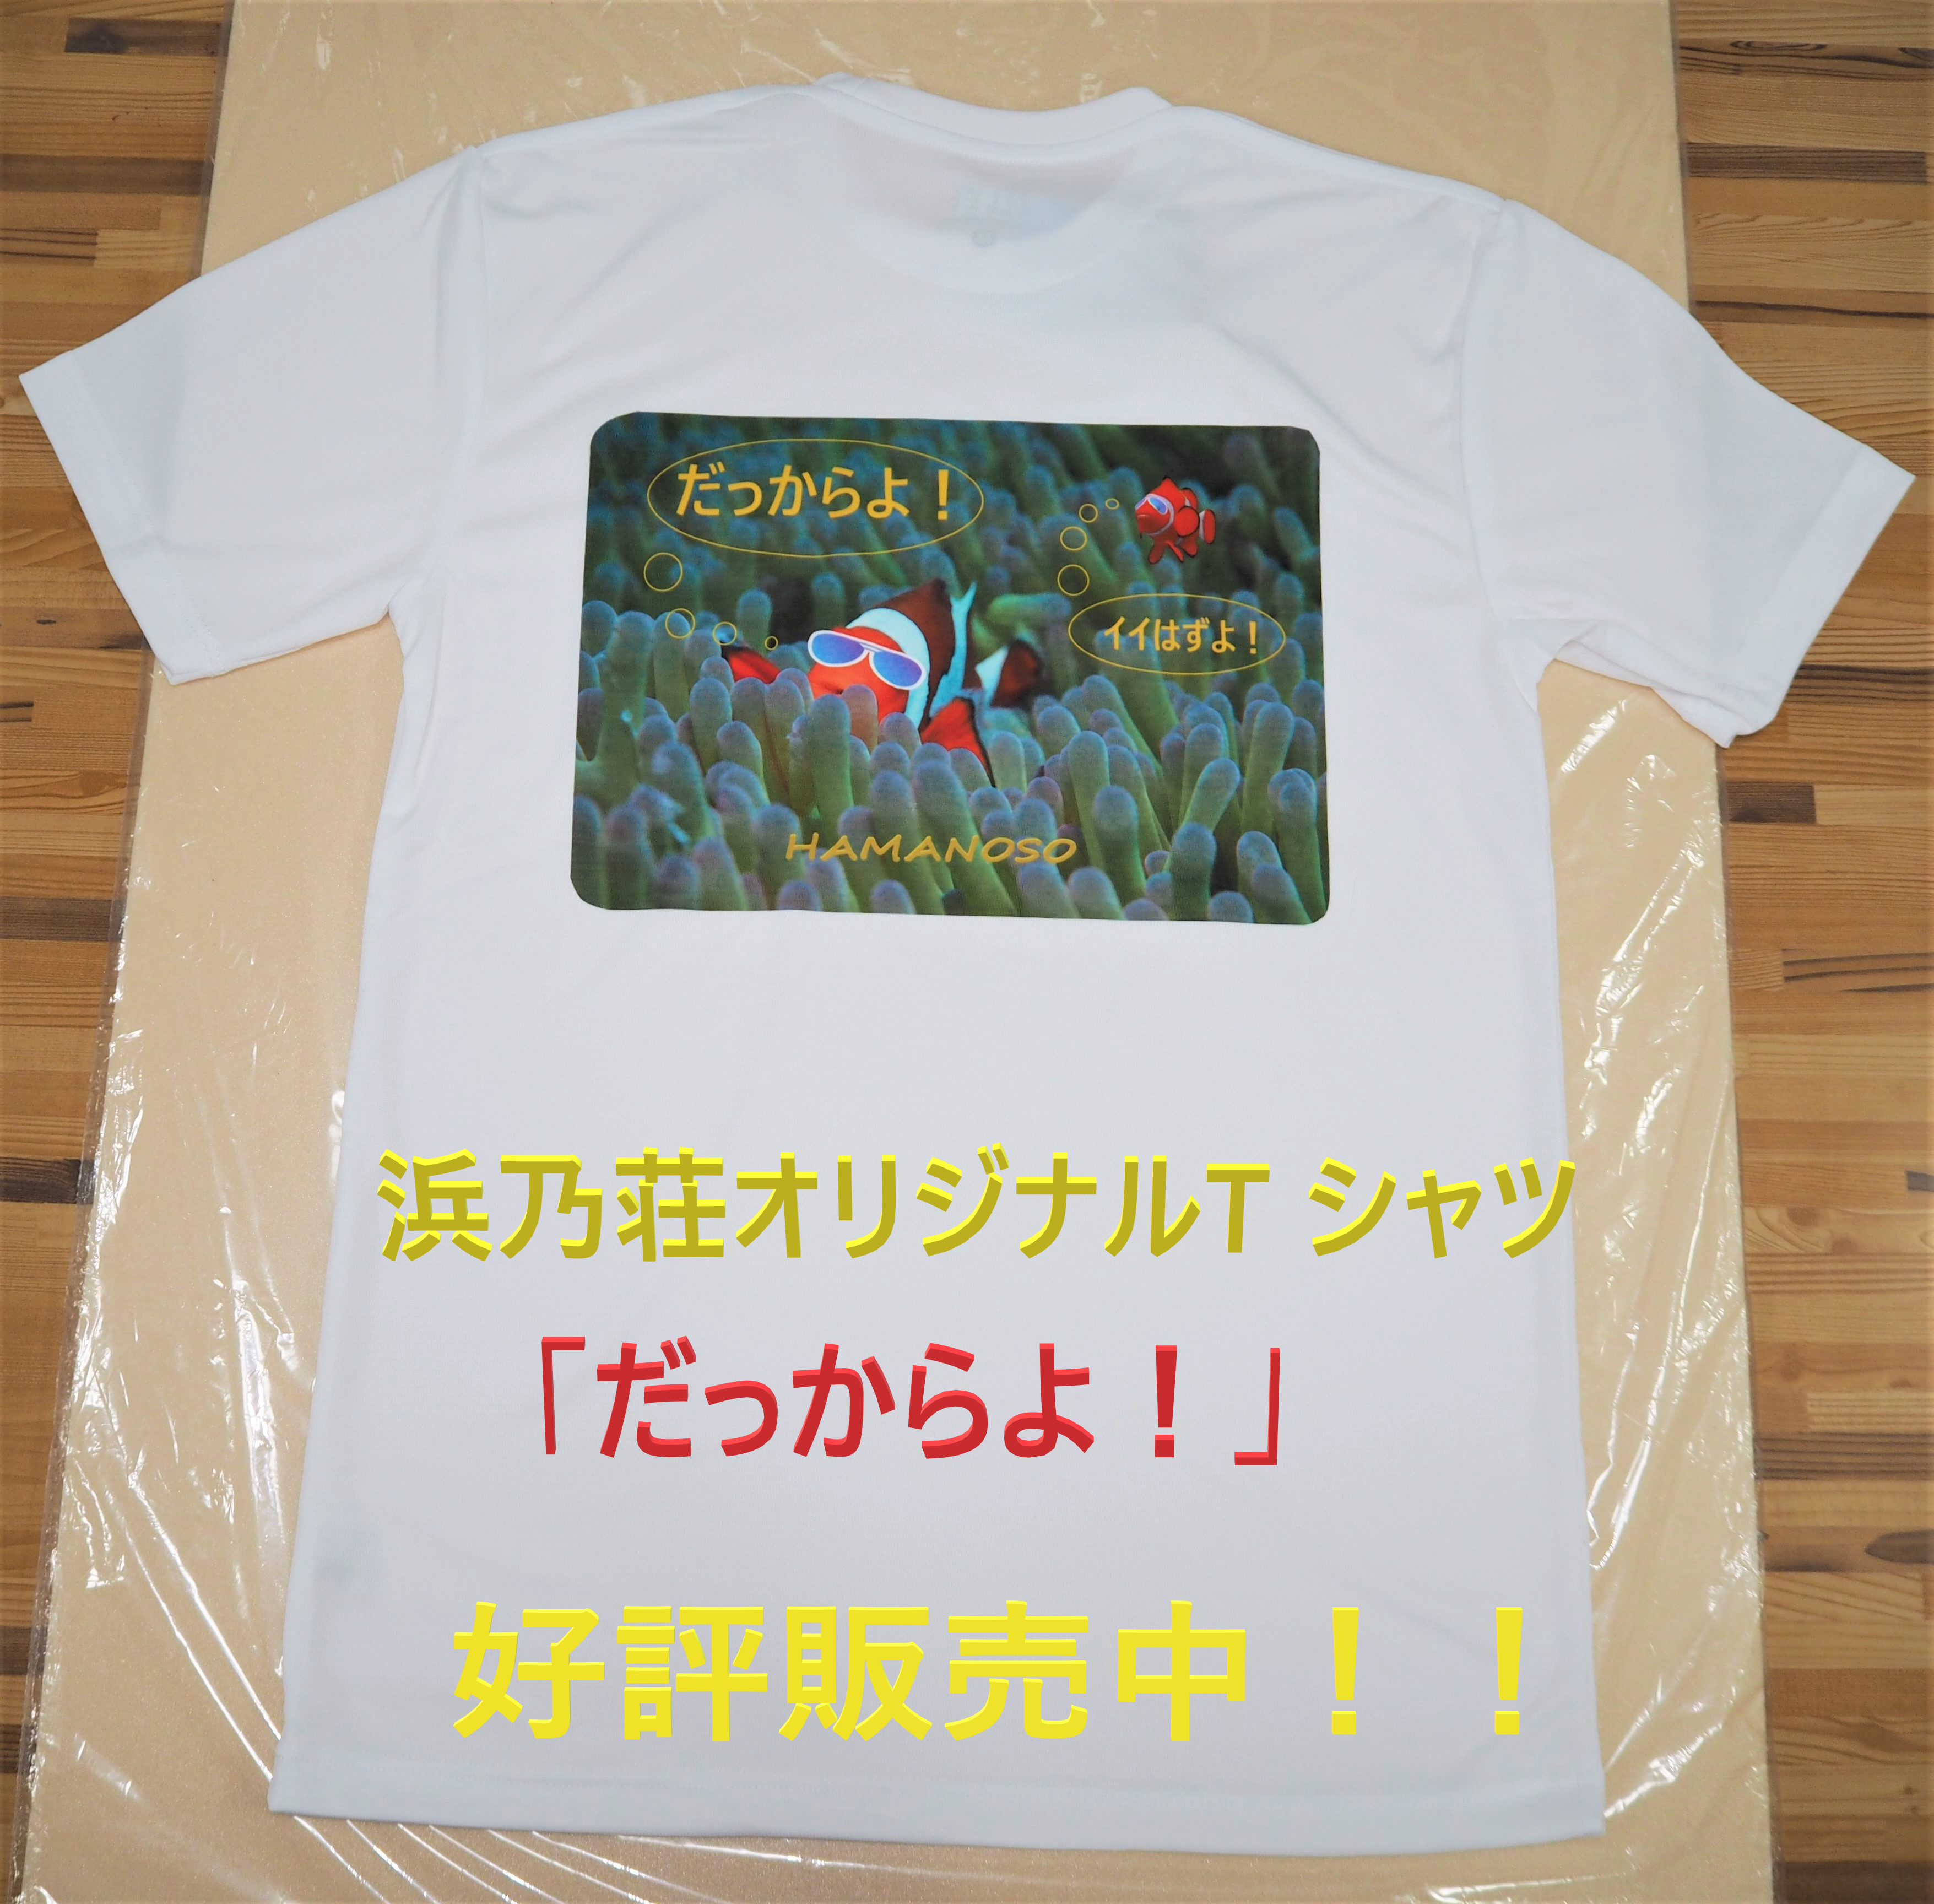 浜乃荘オリジナルT シャツ販売始めました。